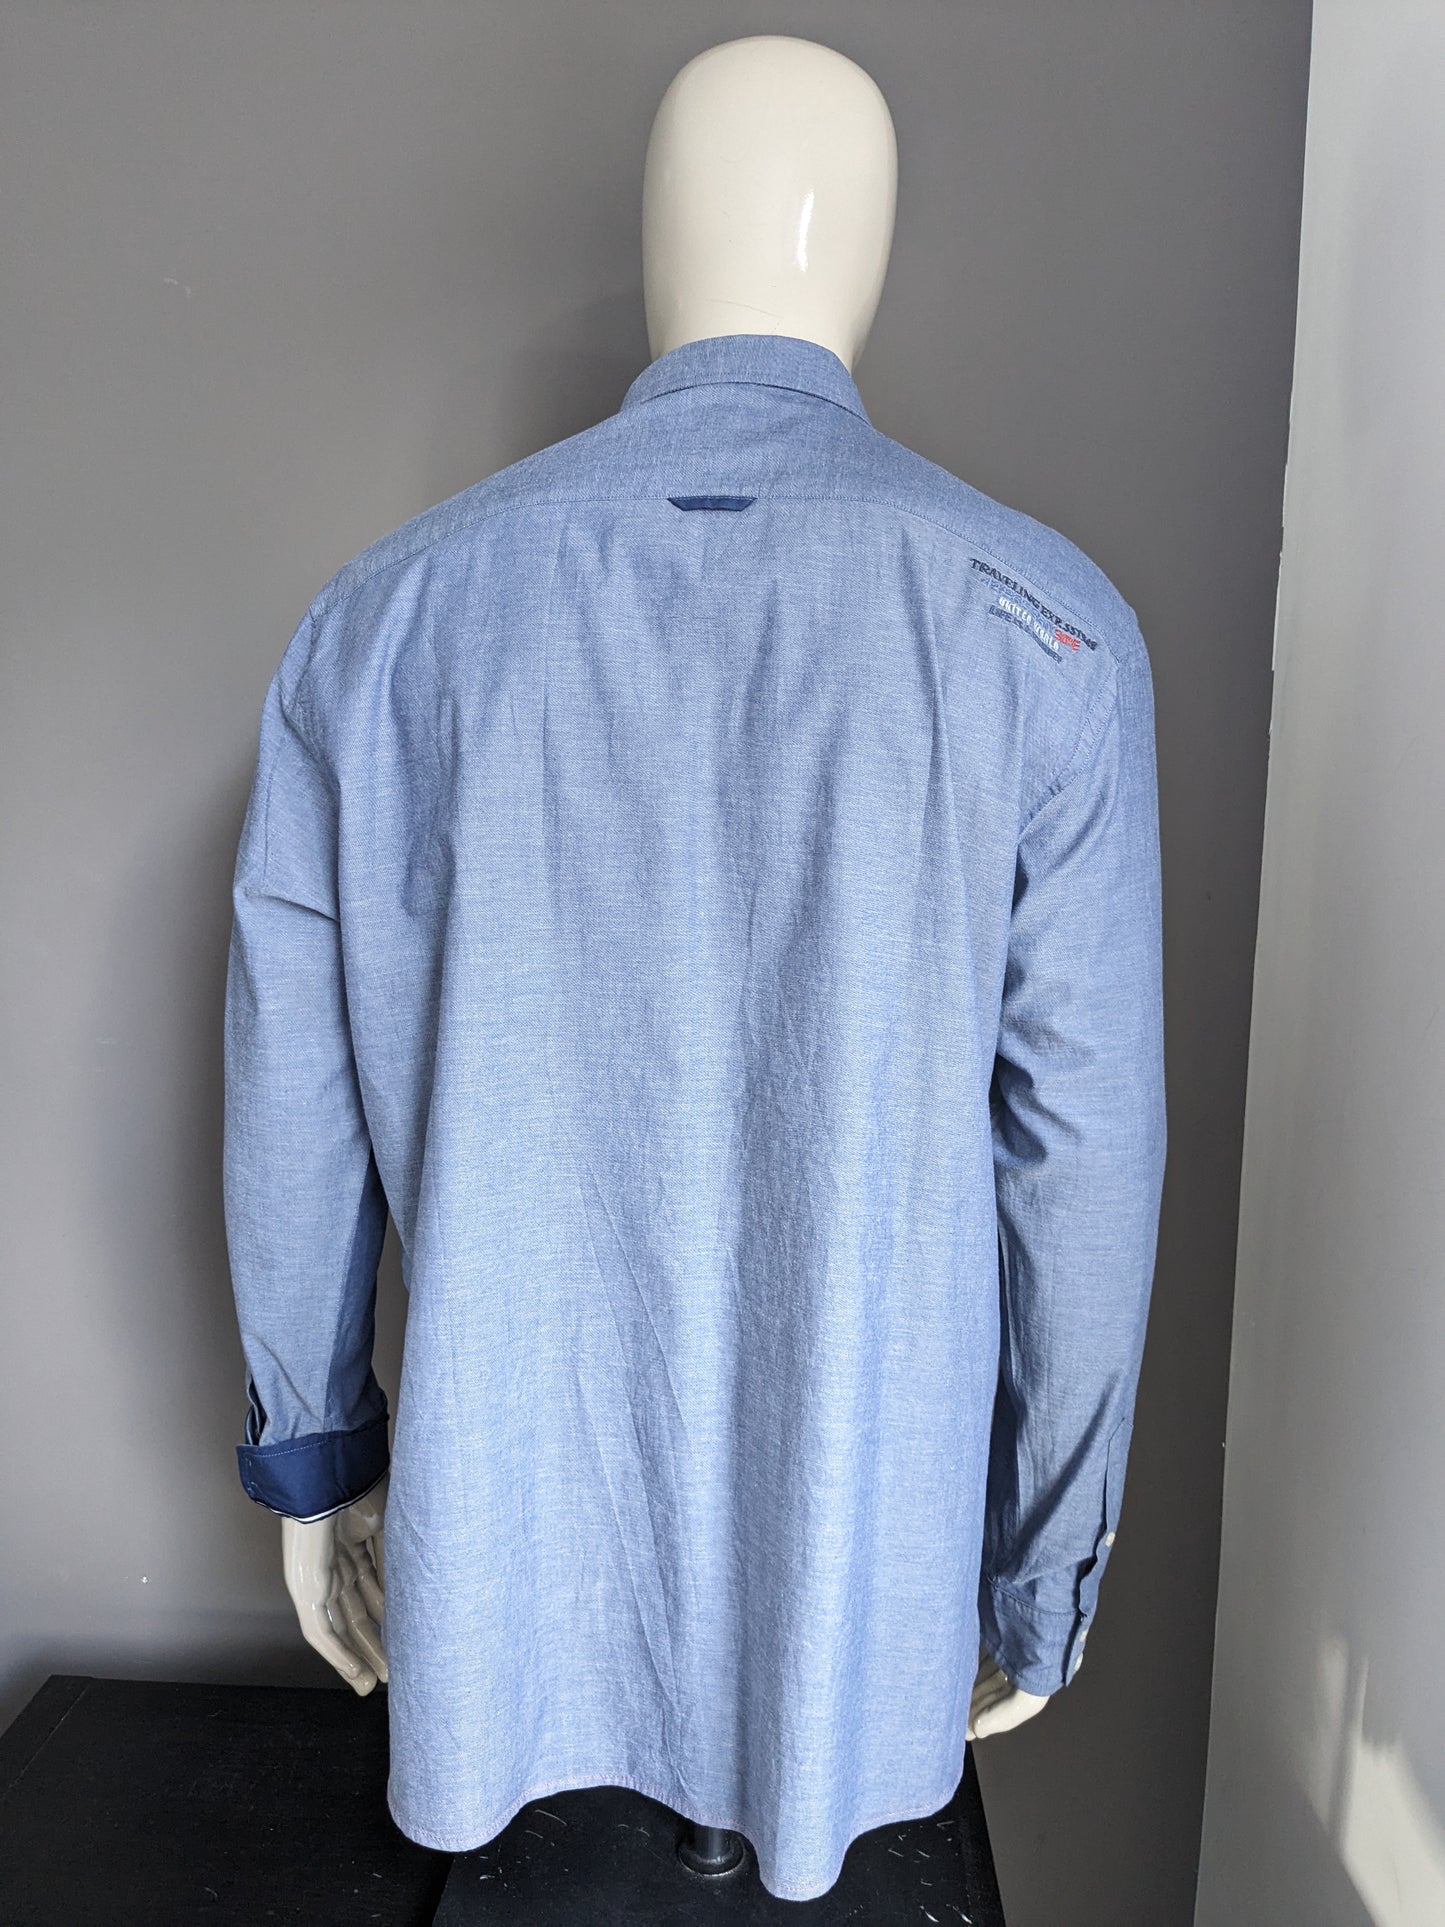 Sastre e hijo camisa. Azul mezclado con aplicaciones. Tamaño 2xl / xxl.